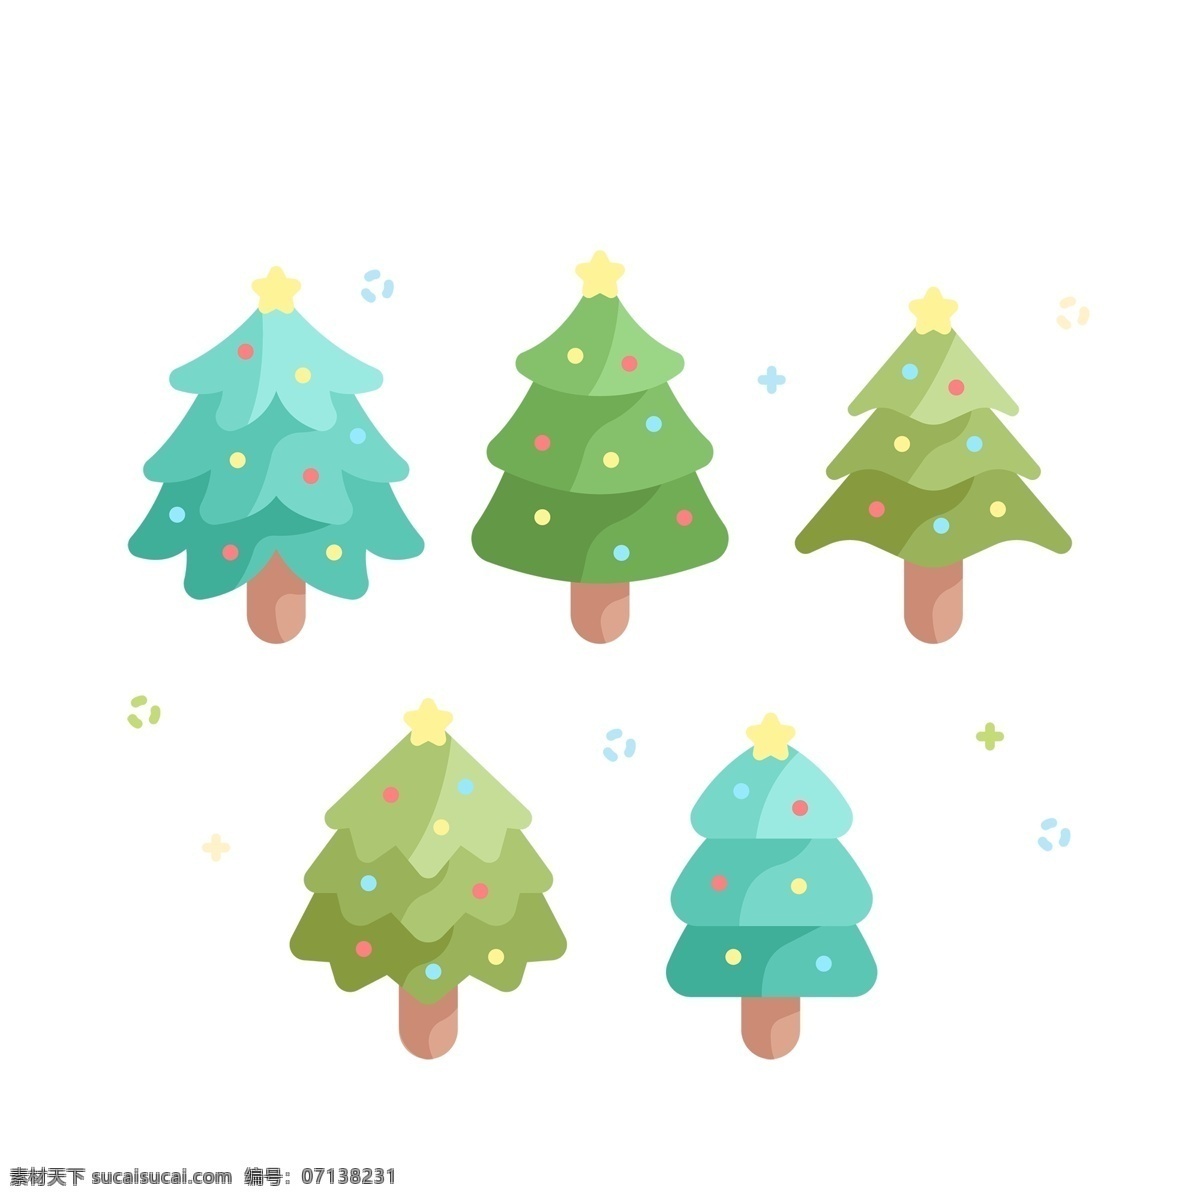 蓝绿色 卡通 圣诞树 免 抠 透明 蓝绿色圣诞树 图 圣诞树装饰图 圣诞树元素 圣诞节树 圣诞元素 节日元素